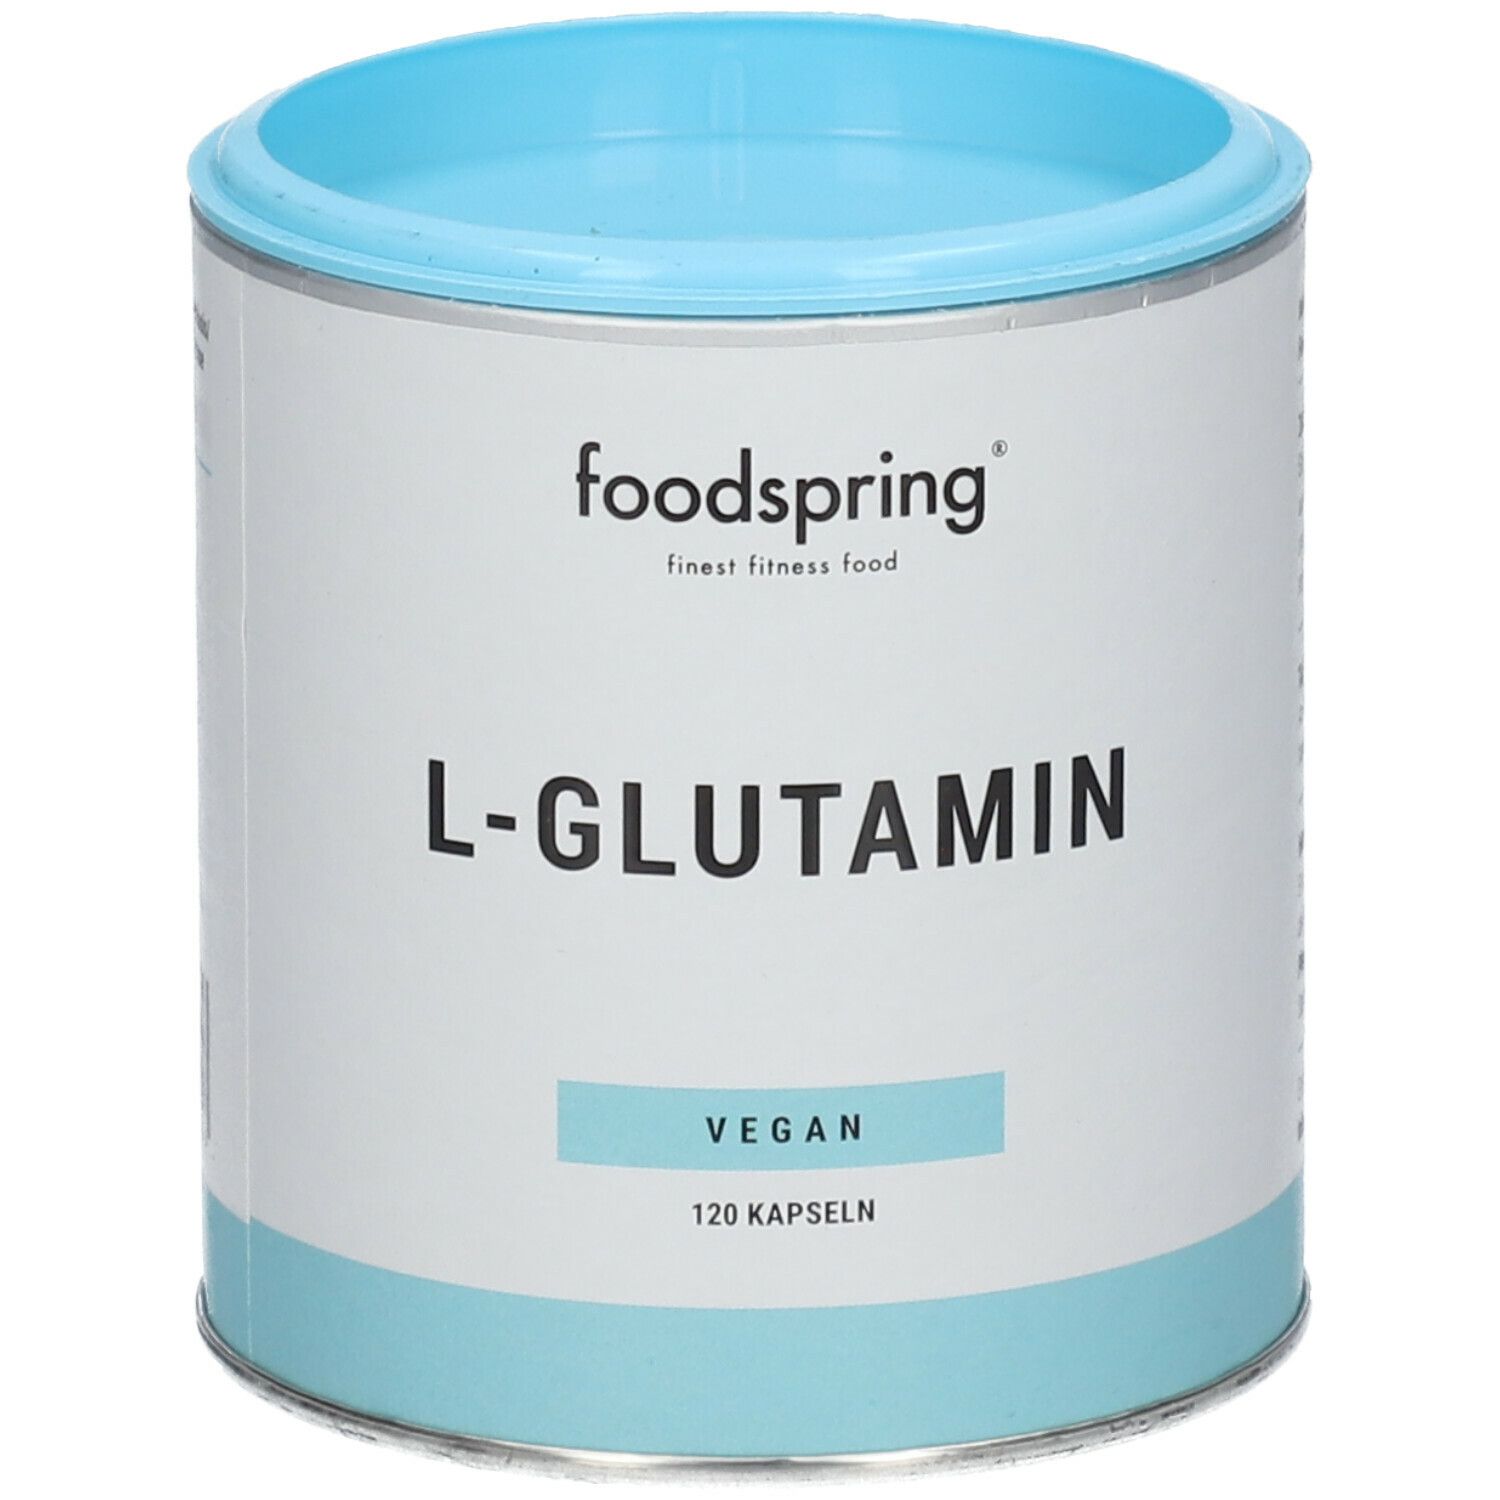 foodspring® L-Glutamin